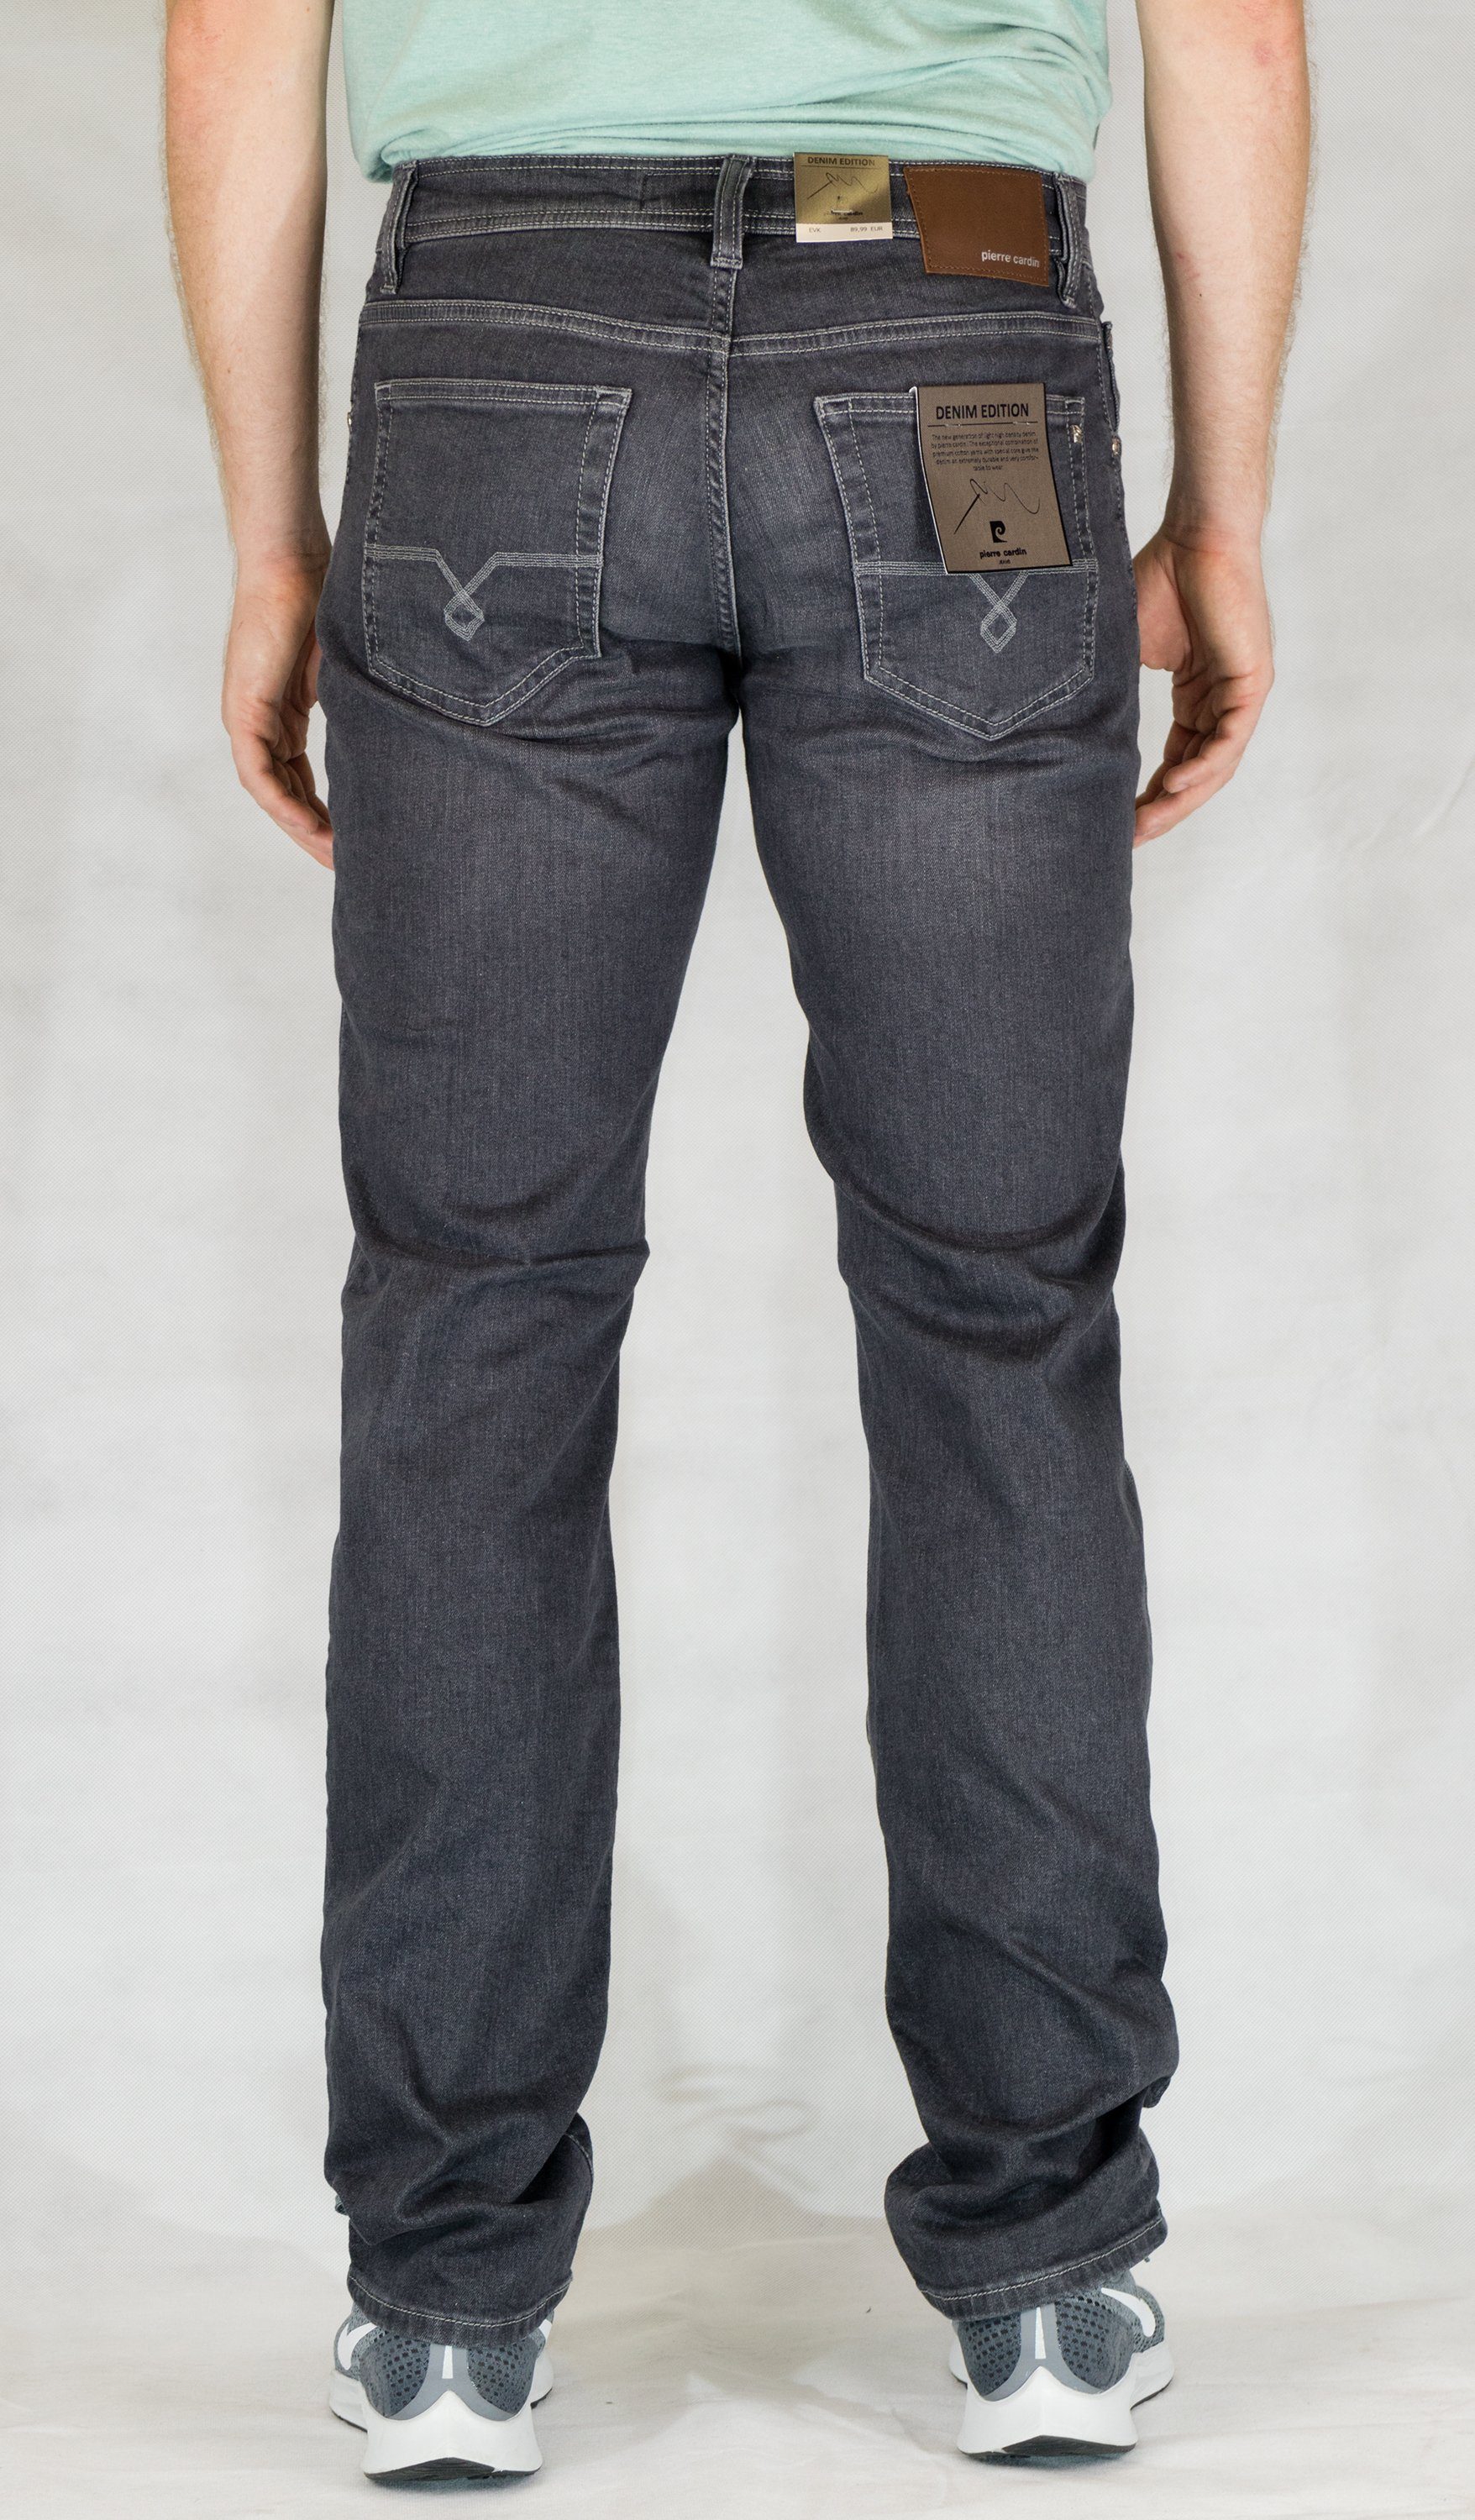 Pierre Cardin 5-Pocket-Jeans PIERRE CARDIN 31961 - DENIM used 7350.92 mid EDITION DEAUVILLE grey